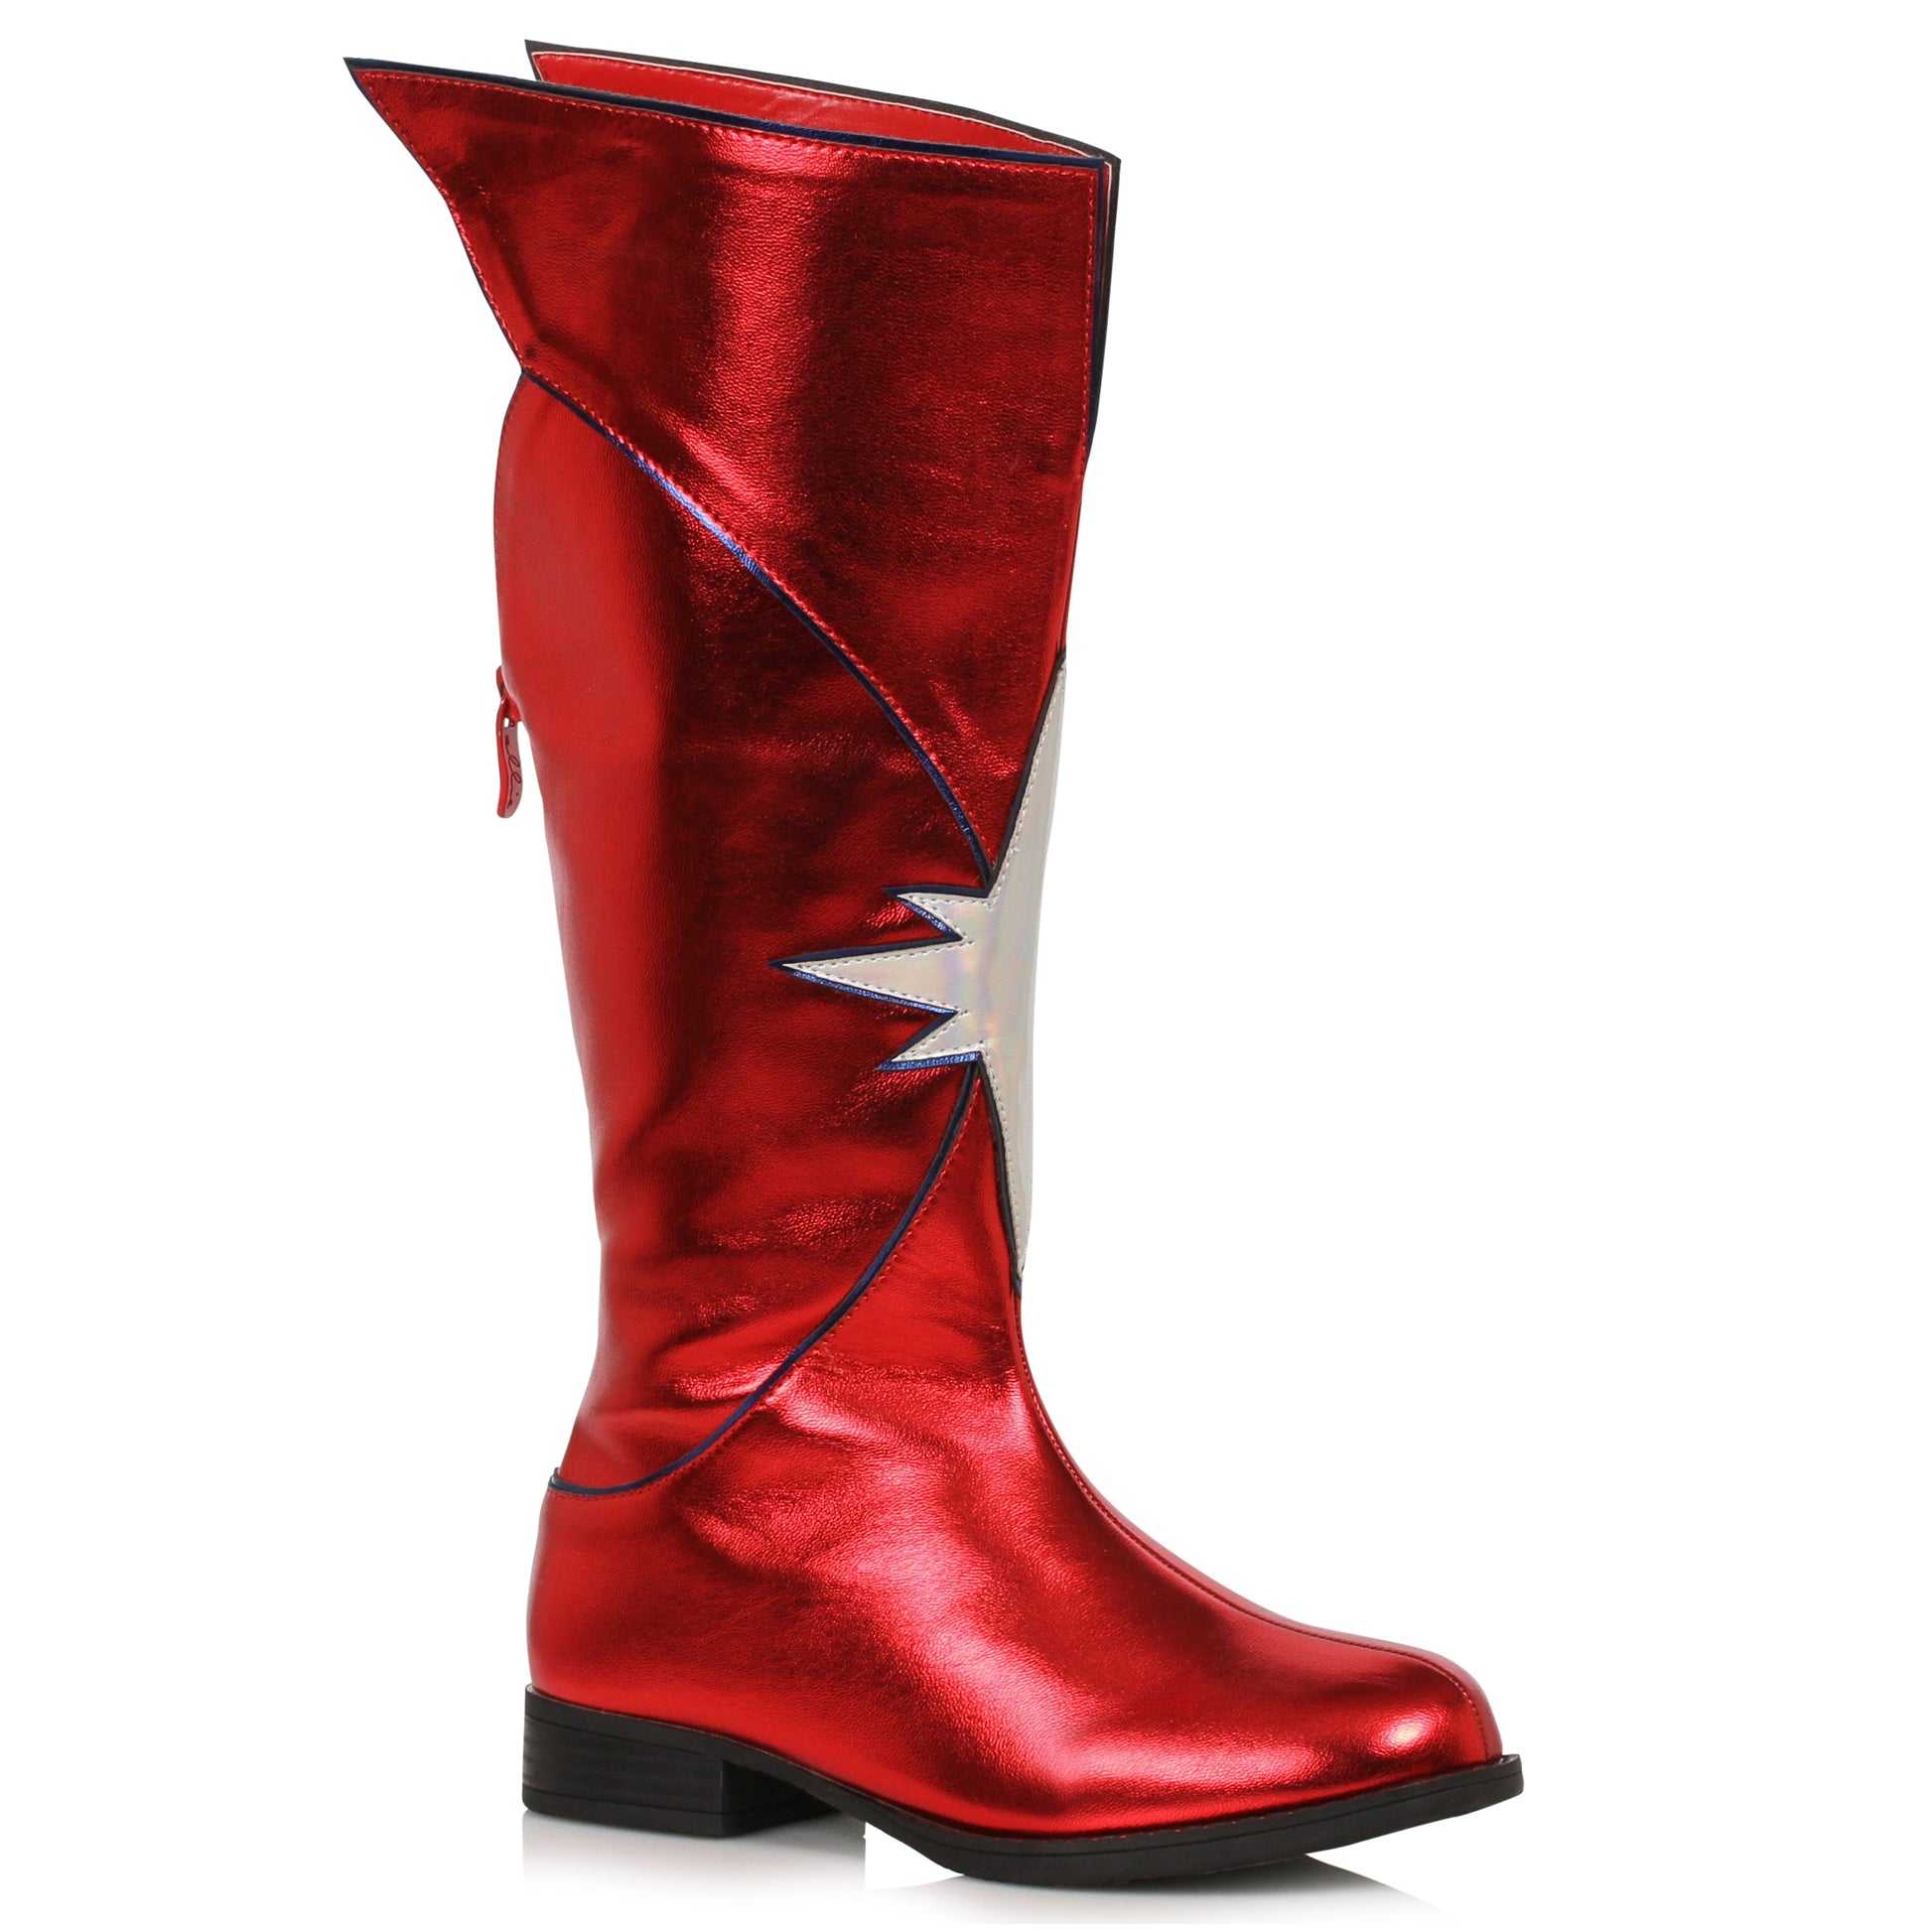 151-KARMA  1.5" Women's Knee High Superhero Boot FLATS KNEE HIGH